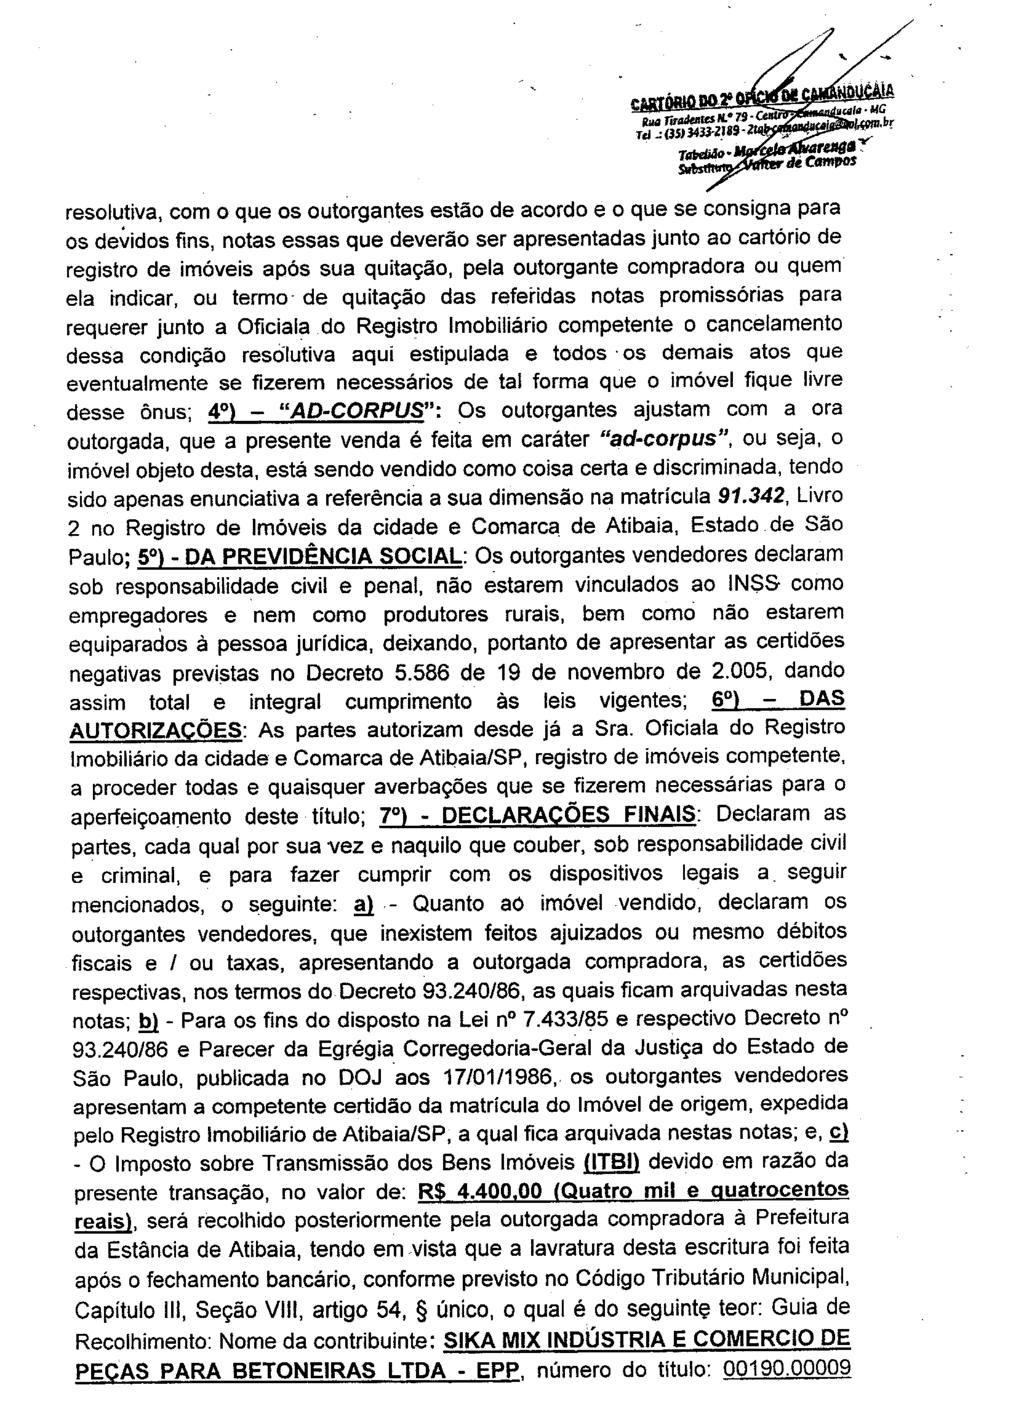 fls. 17 Este documento é cópia do original, assinado digitalmente por FERNANDO ALVARENGA RODRIGUES e Tribunal de Justica do Estado de Sao Paulo, protocolado em 25/10/2016 às 18:42, sob o número